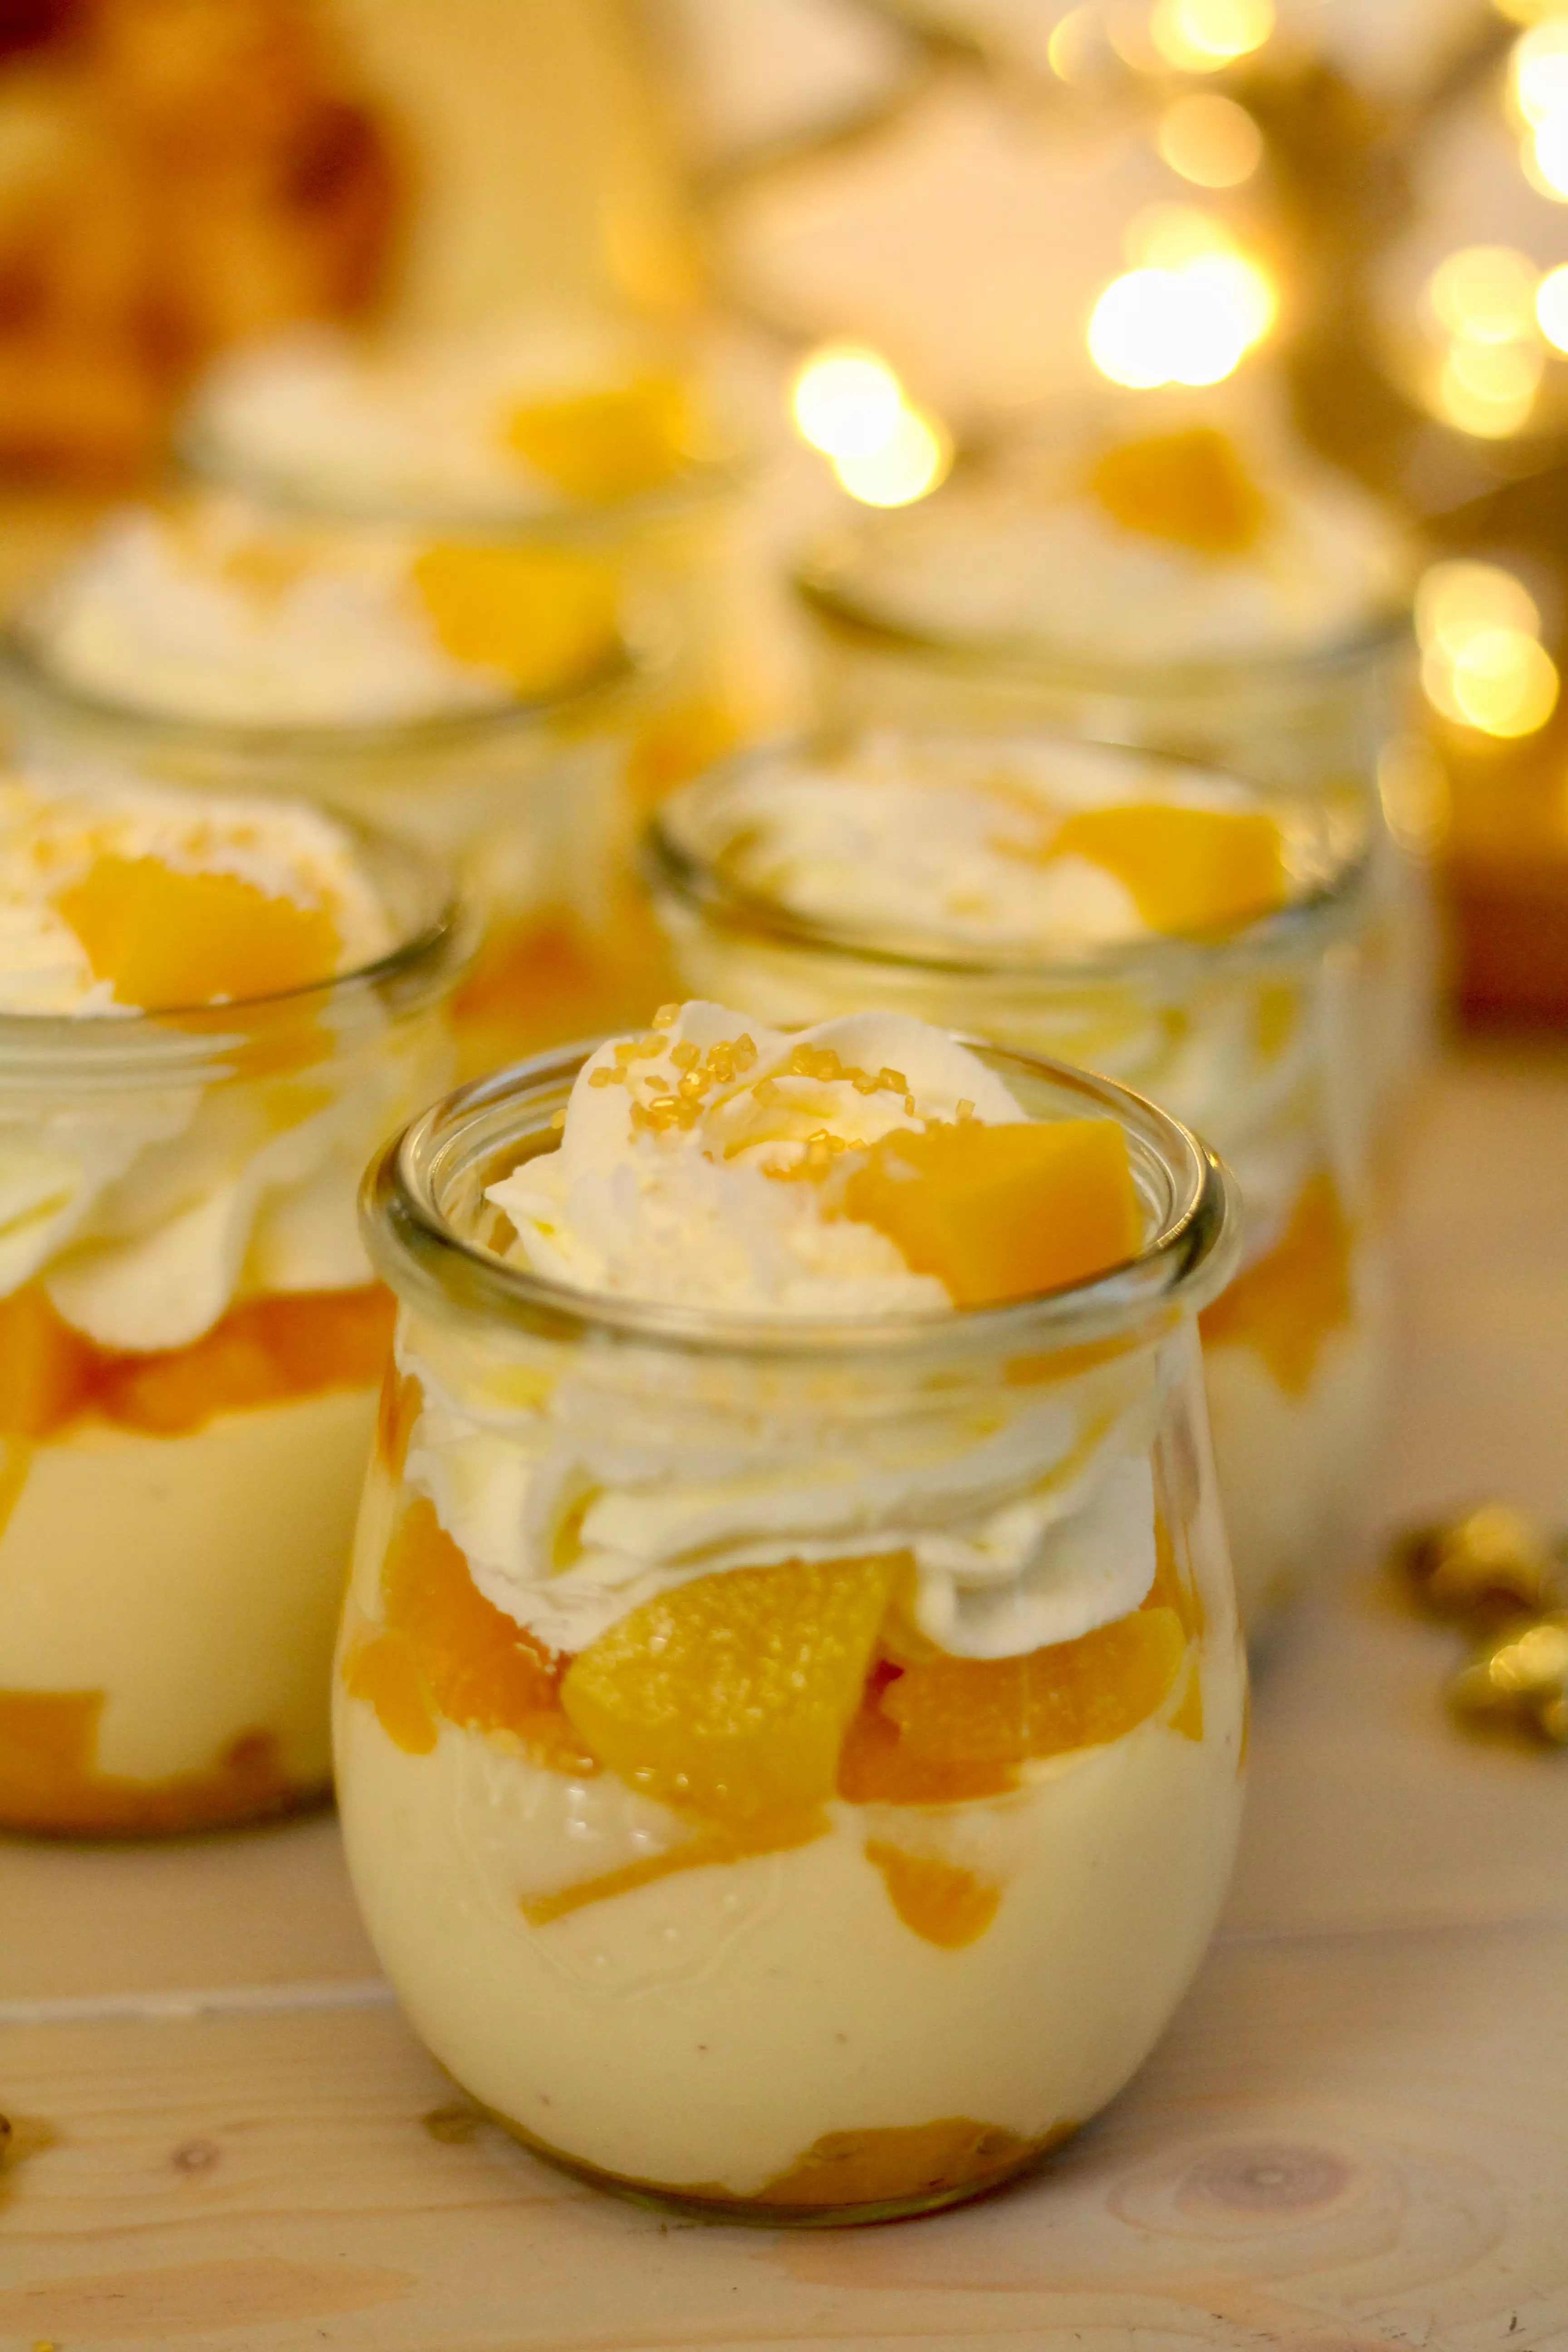 Himmlisch sahniges Pfirsich-Vanille-Dessert | Rezept von Sugarprincess | SCCC 2022 mit Gewinnspiel: Türchen Nr. 19